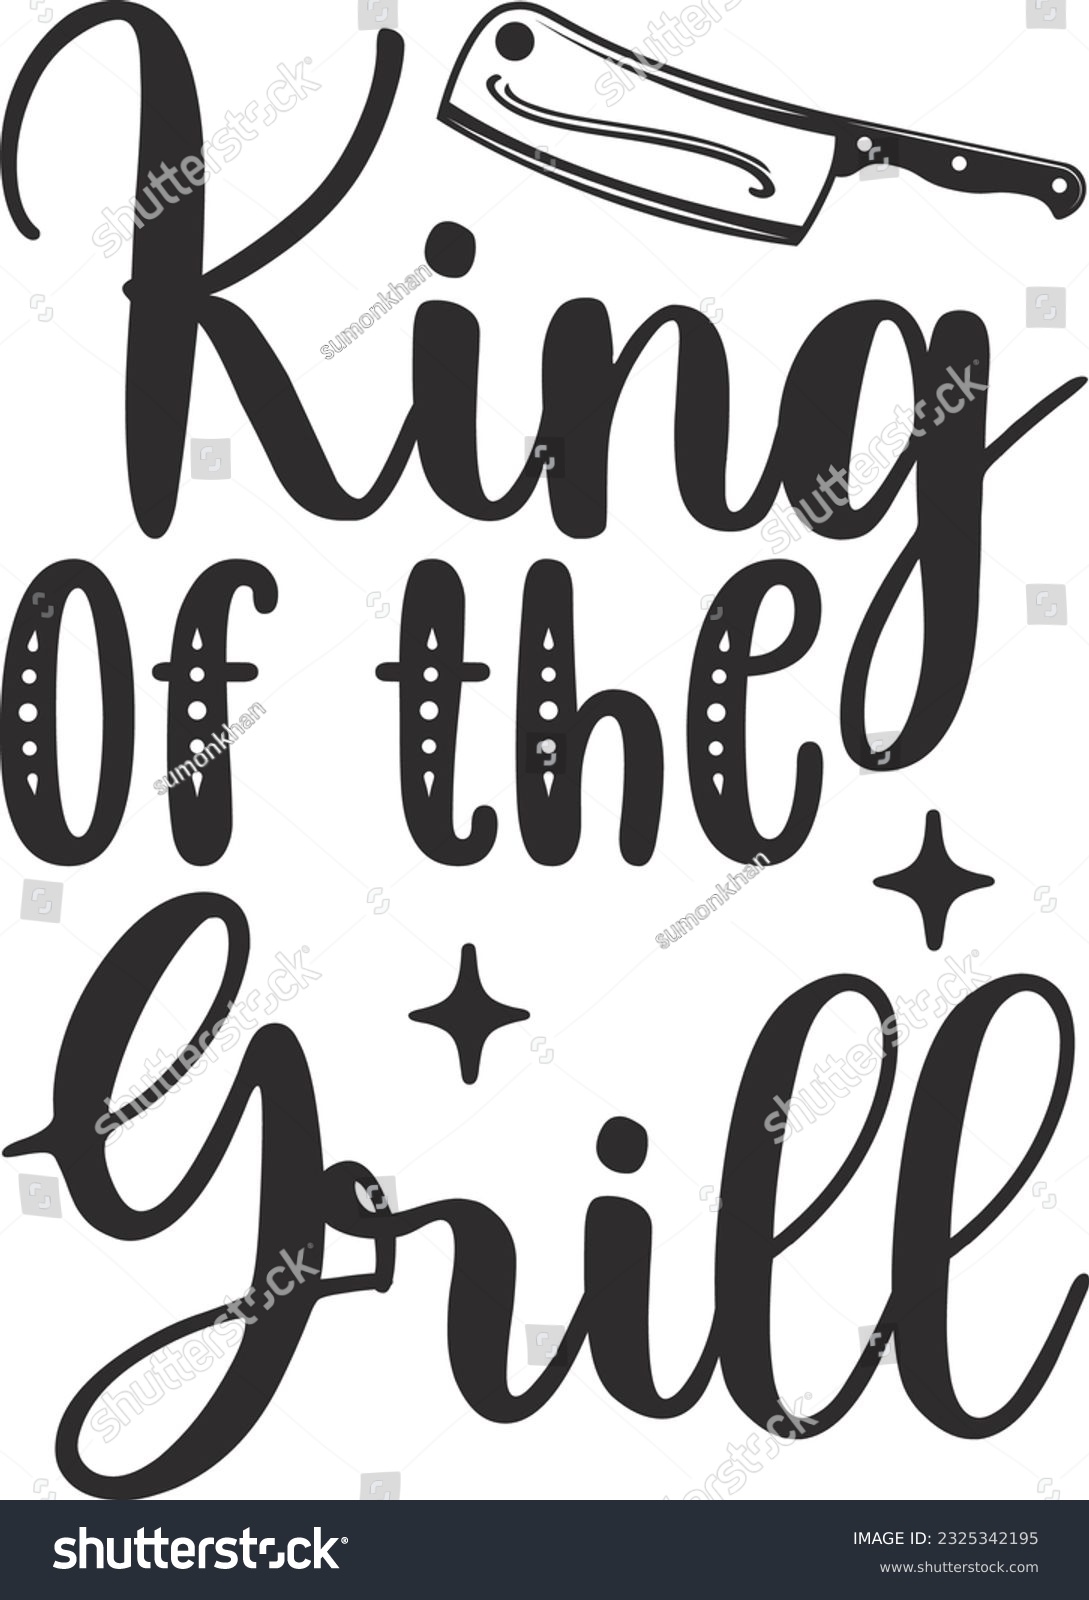 SVG of King of the Grill; Best SVG Design svg